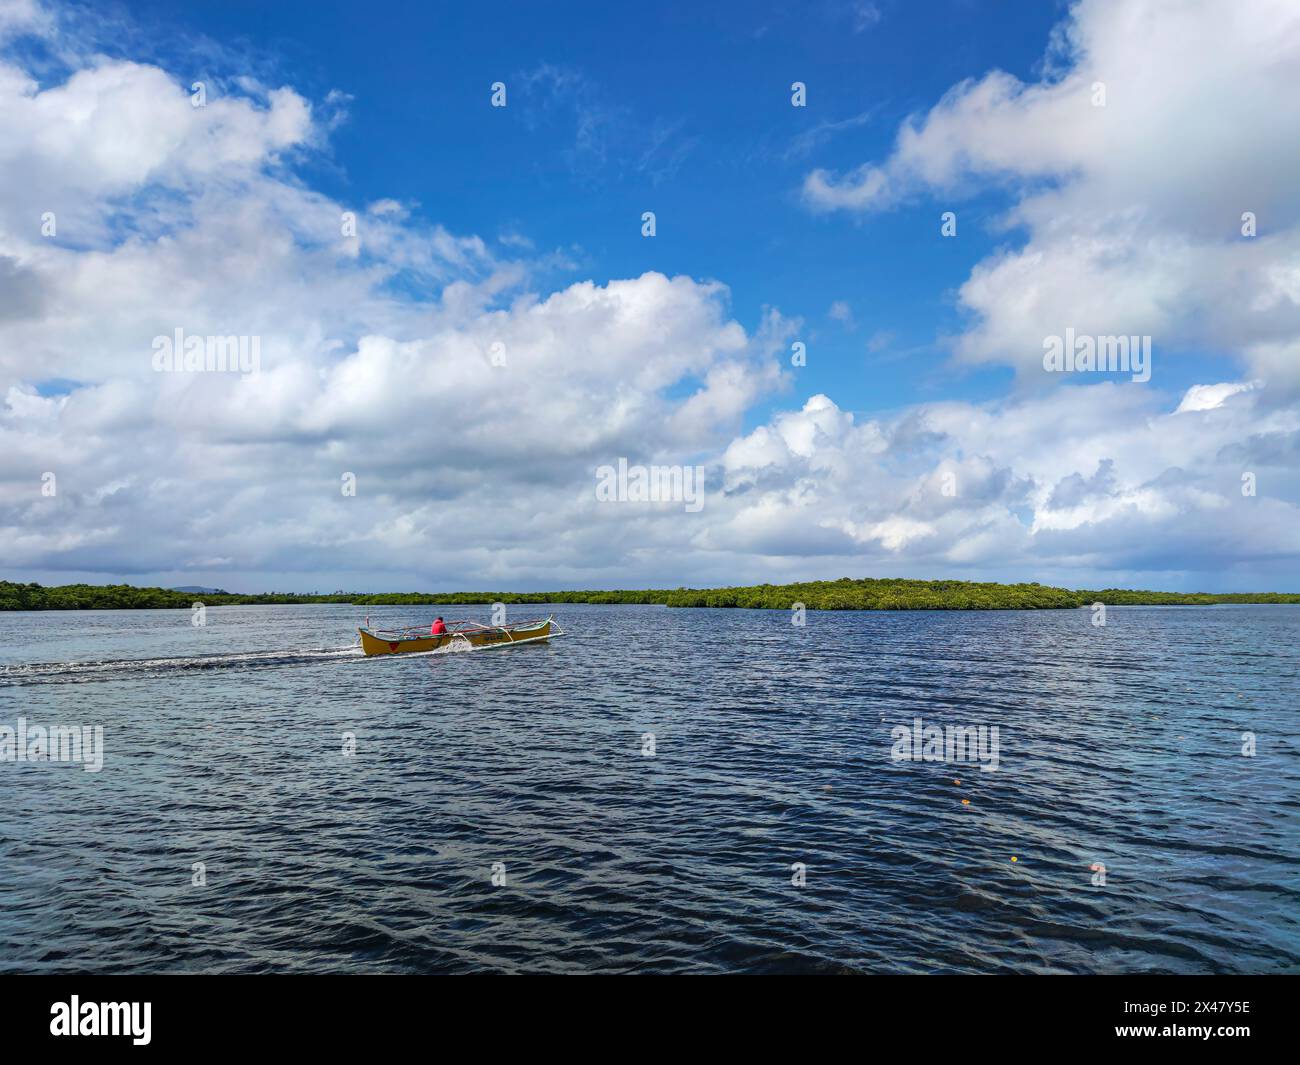 Un uomo pilota una barca a motore in mezzo a un paesaggio surreale di nuvole e foreste di mangrovie. Foto Stock